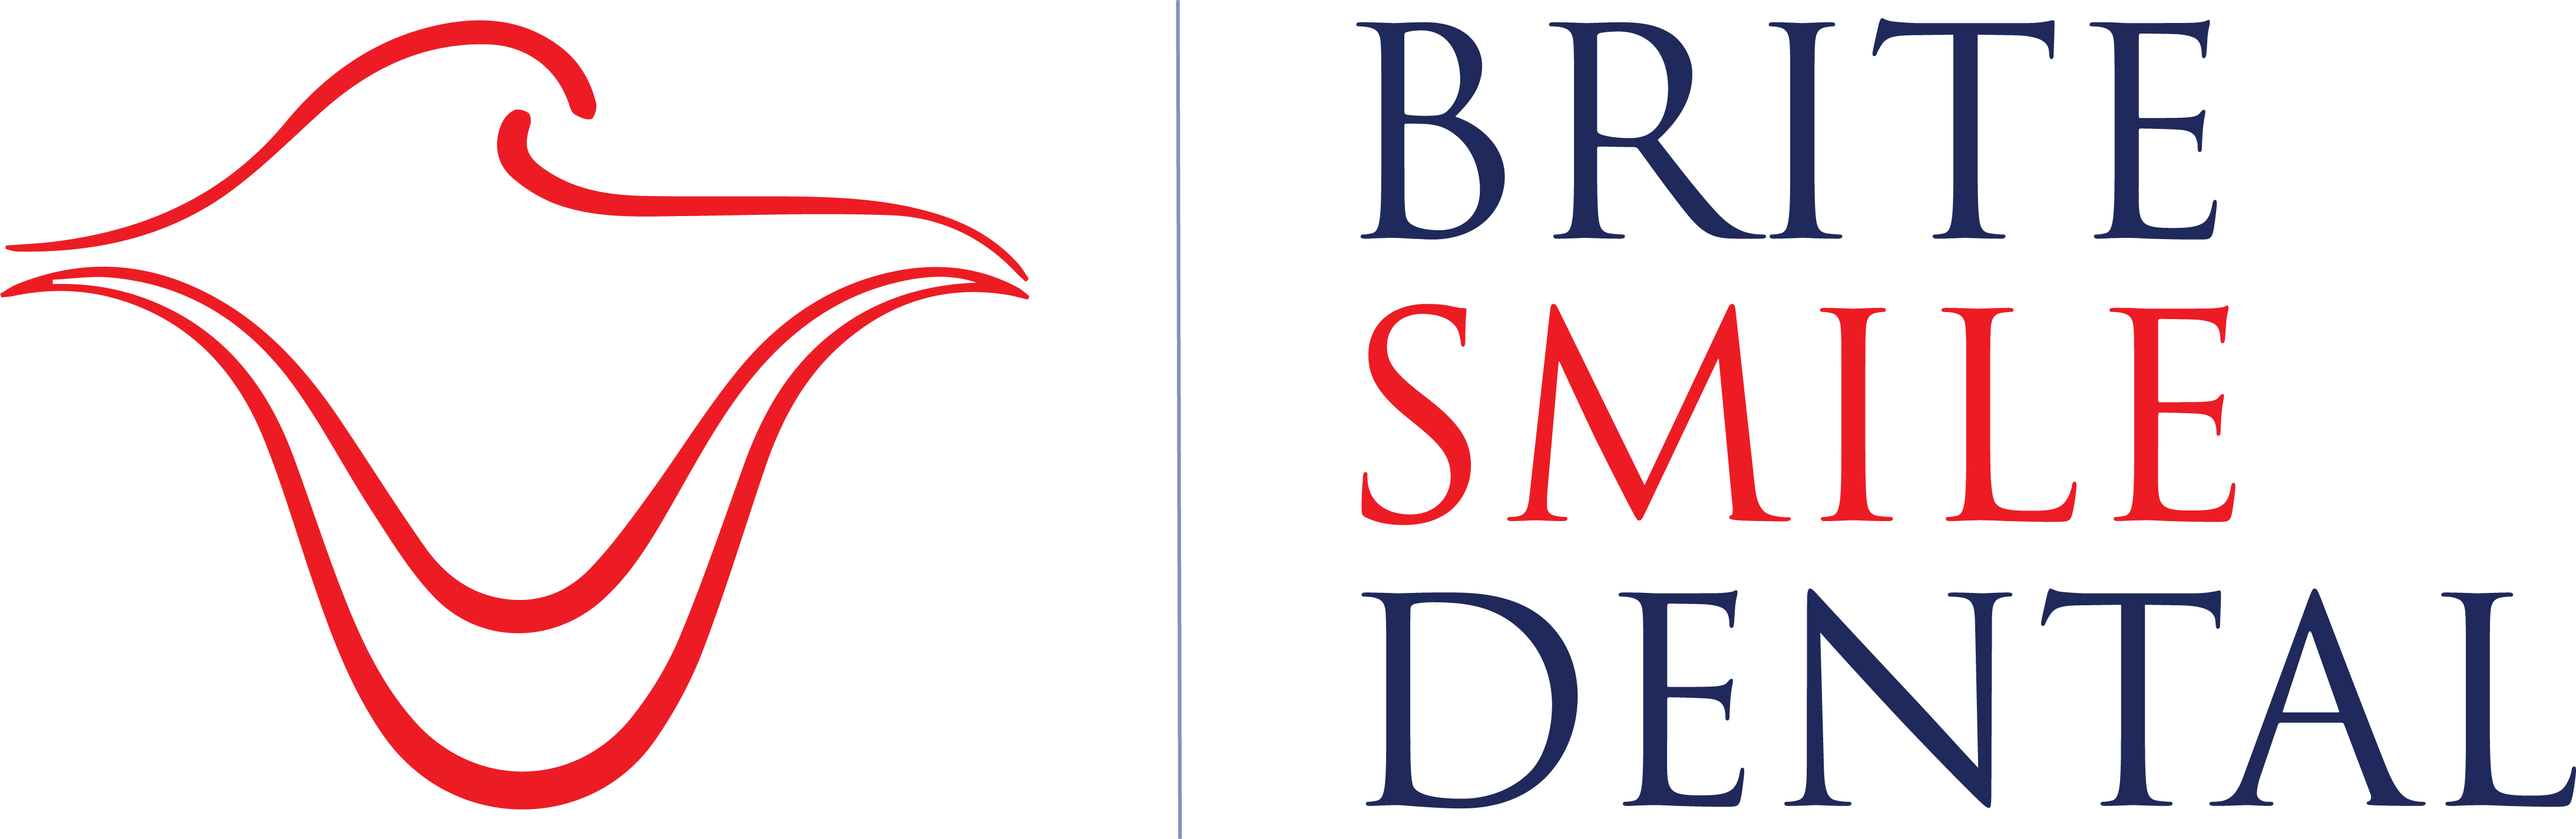 Brite-Smile-Logo-Original-2020